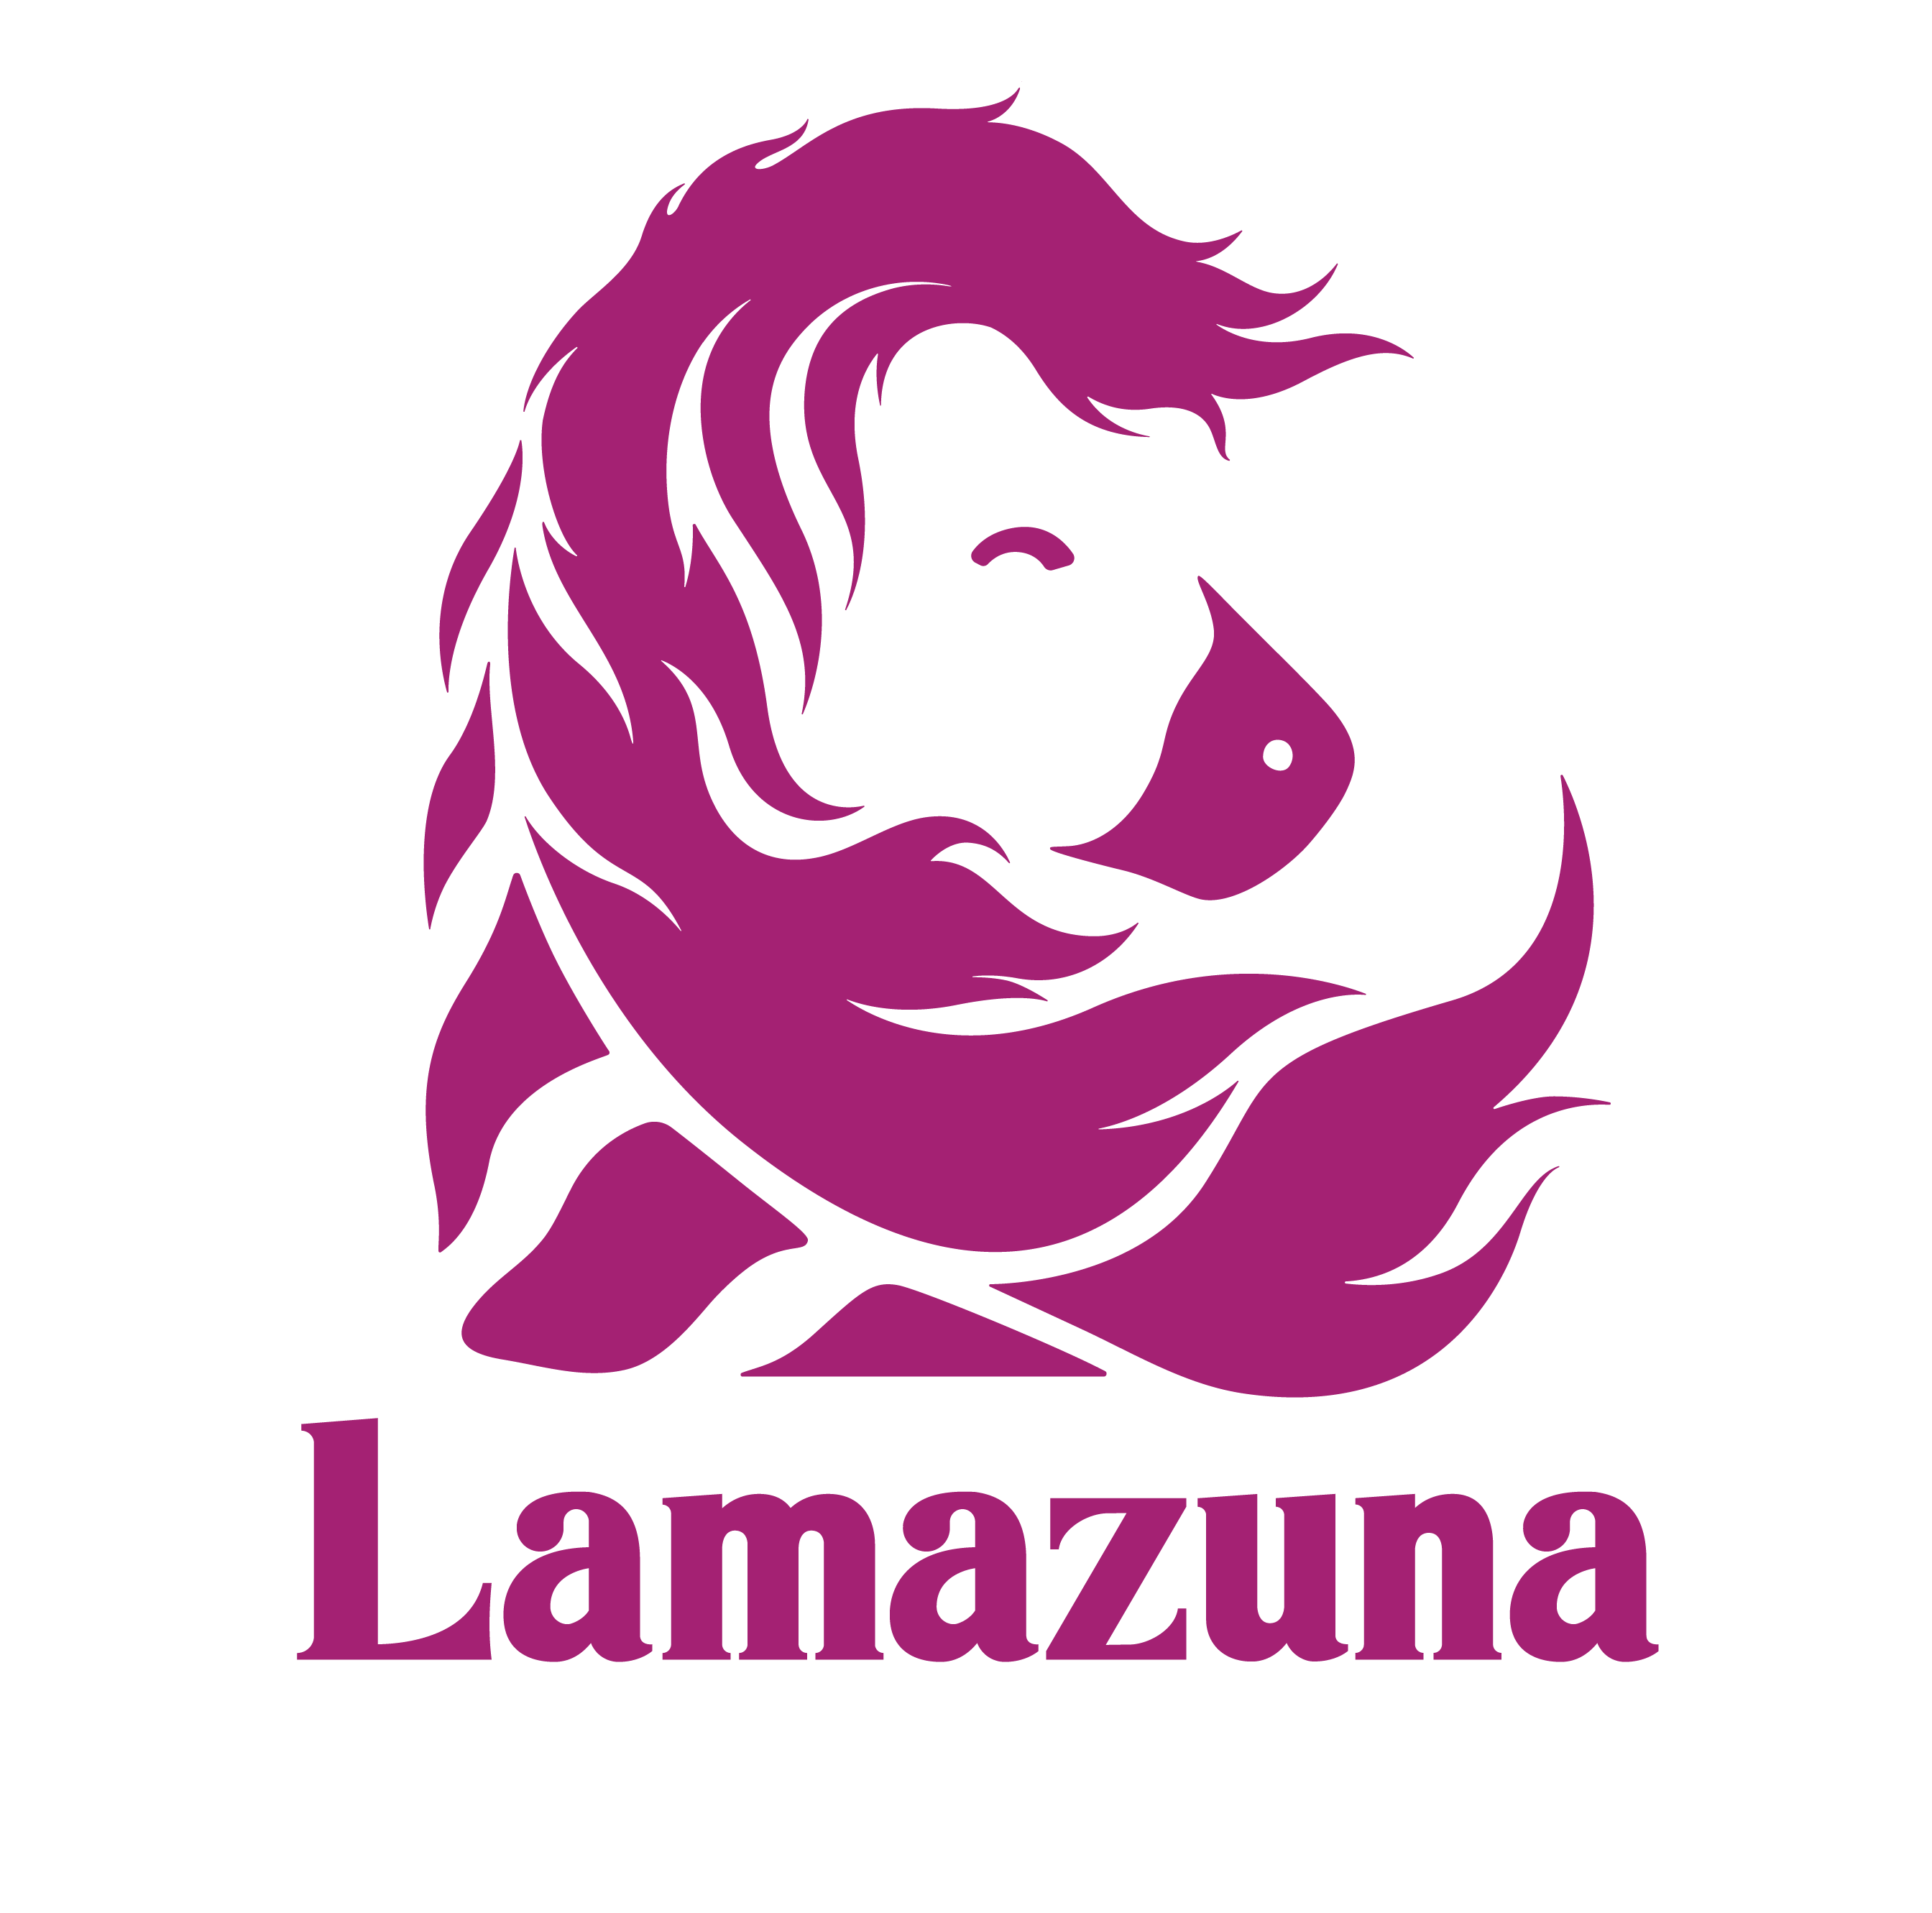 Logo de Lamazuna